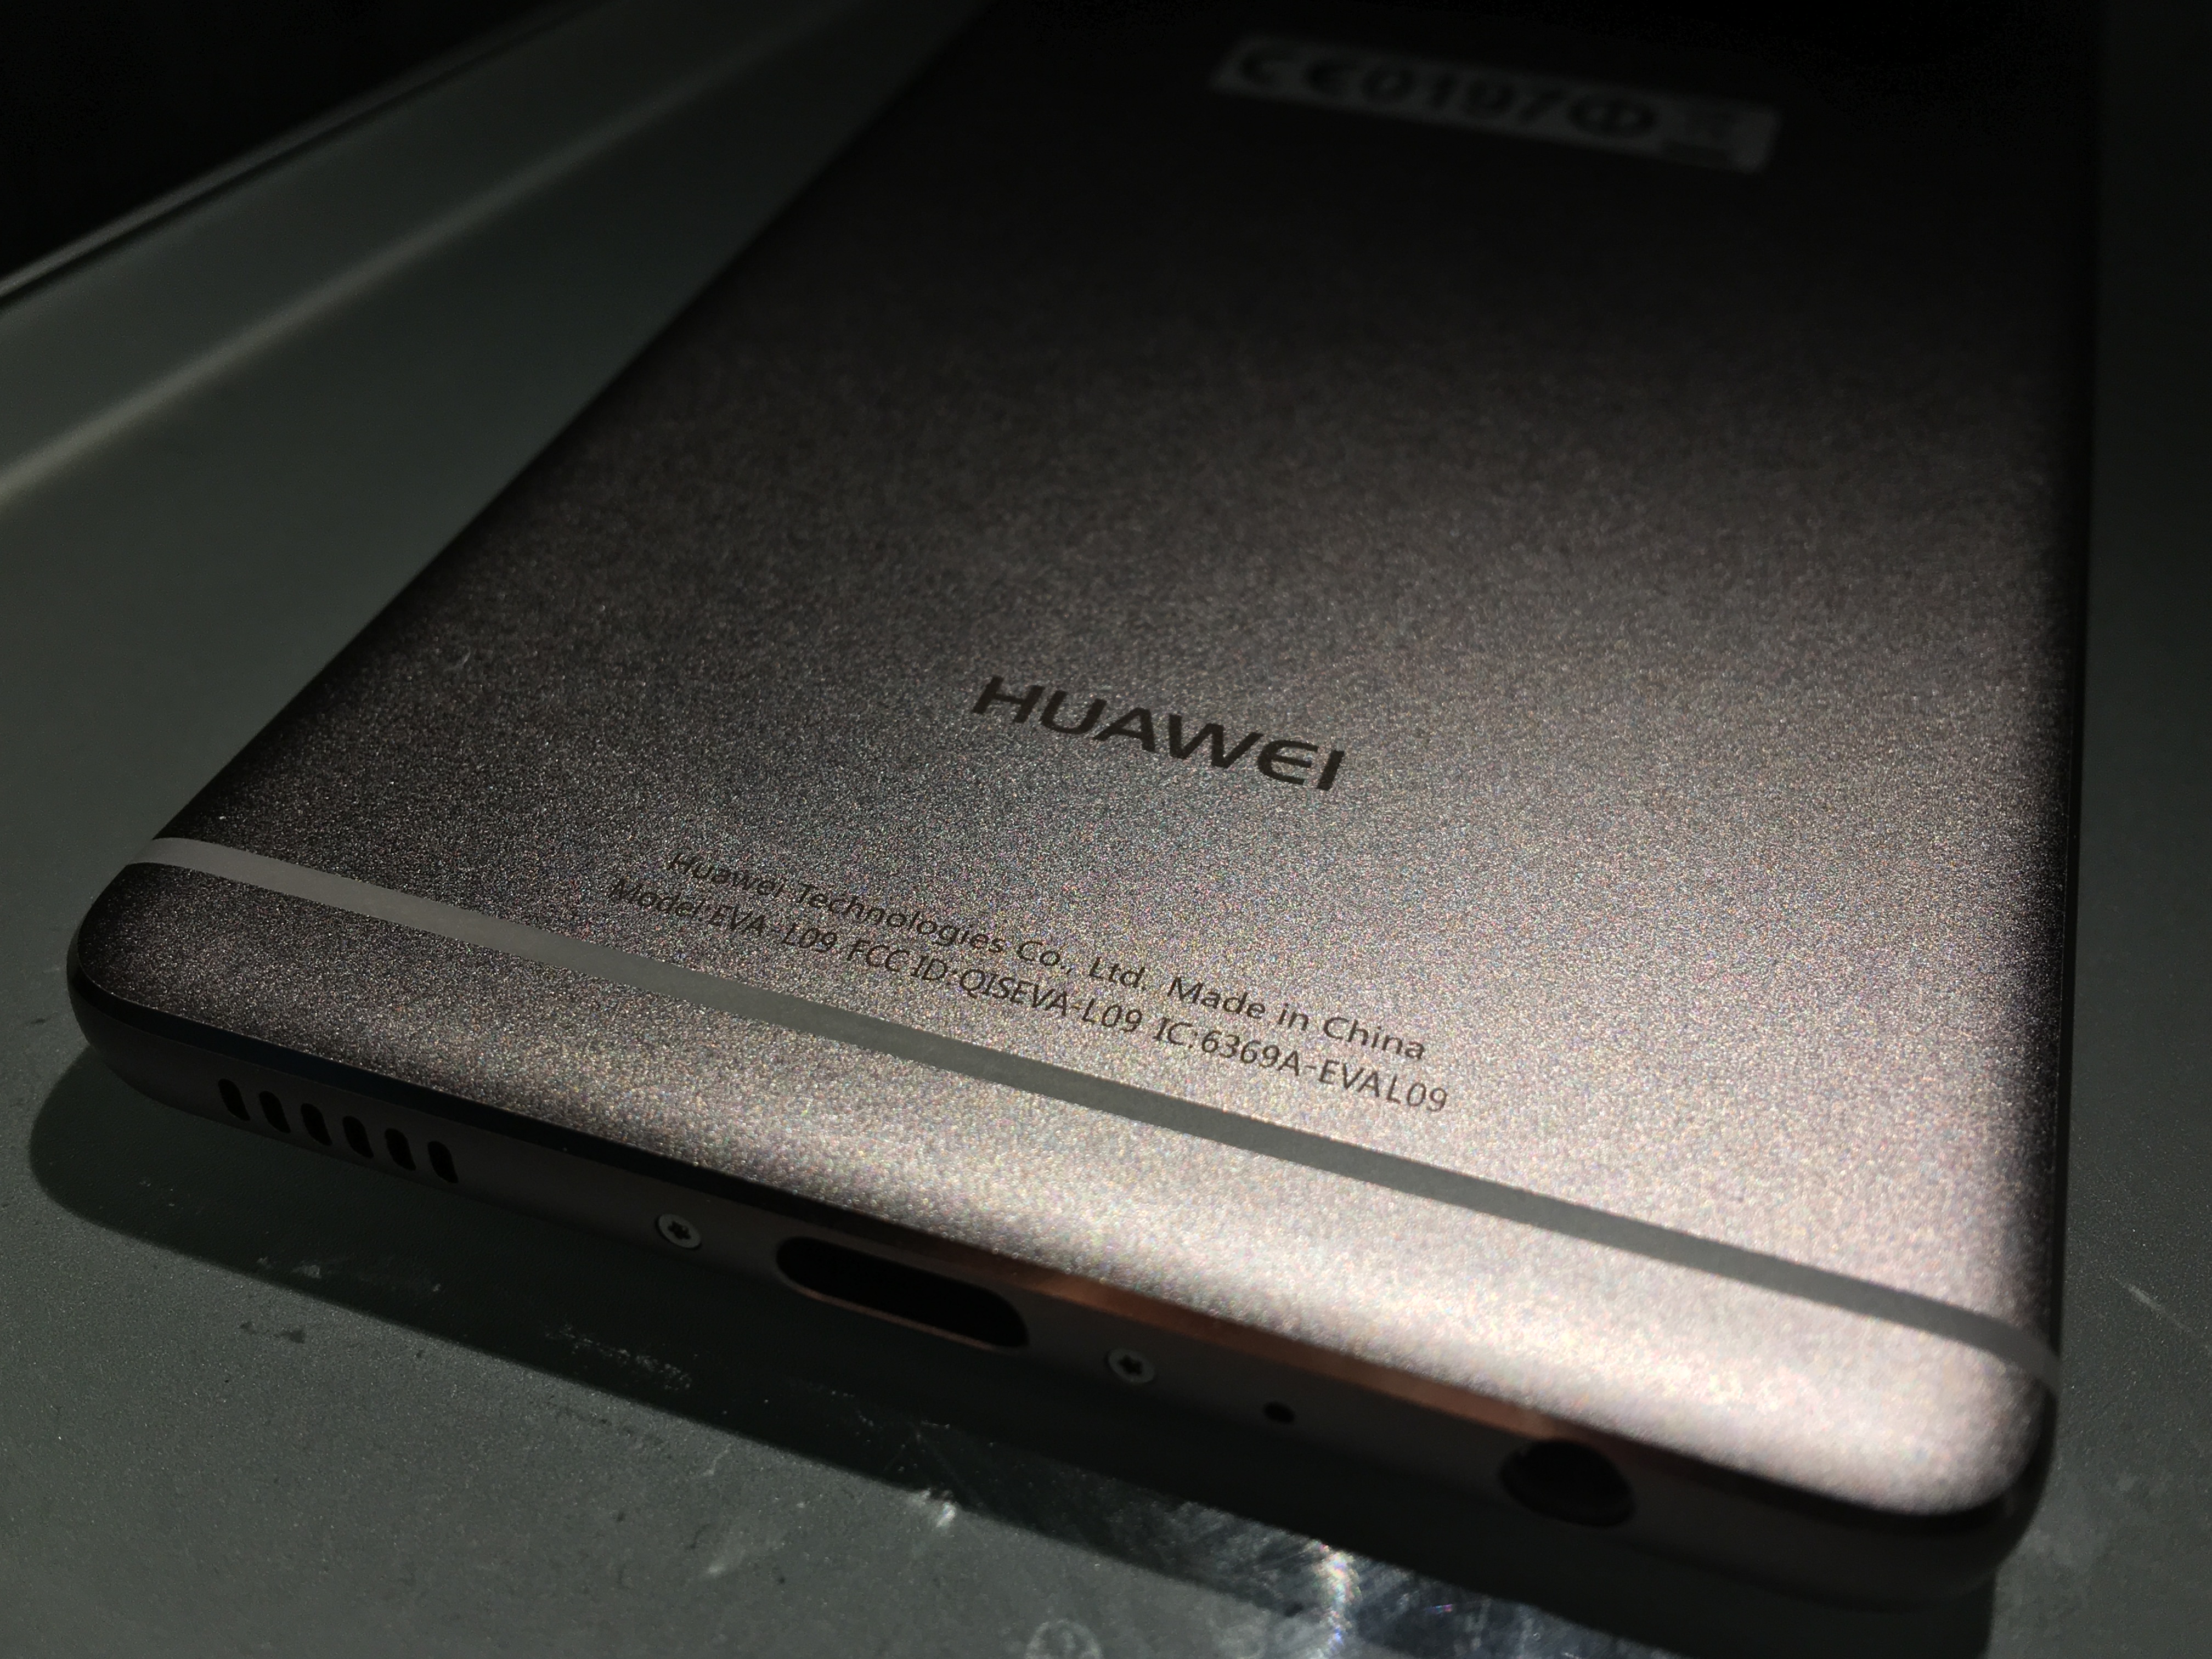 Huawei P9 Review 4